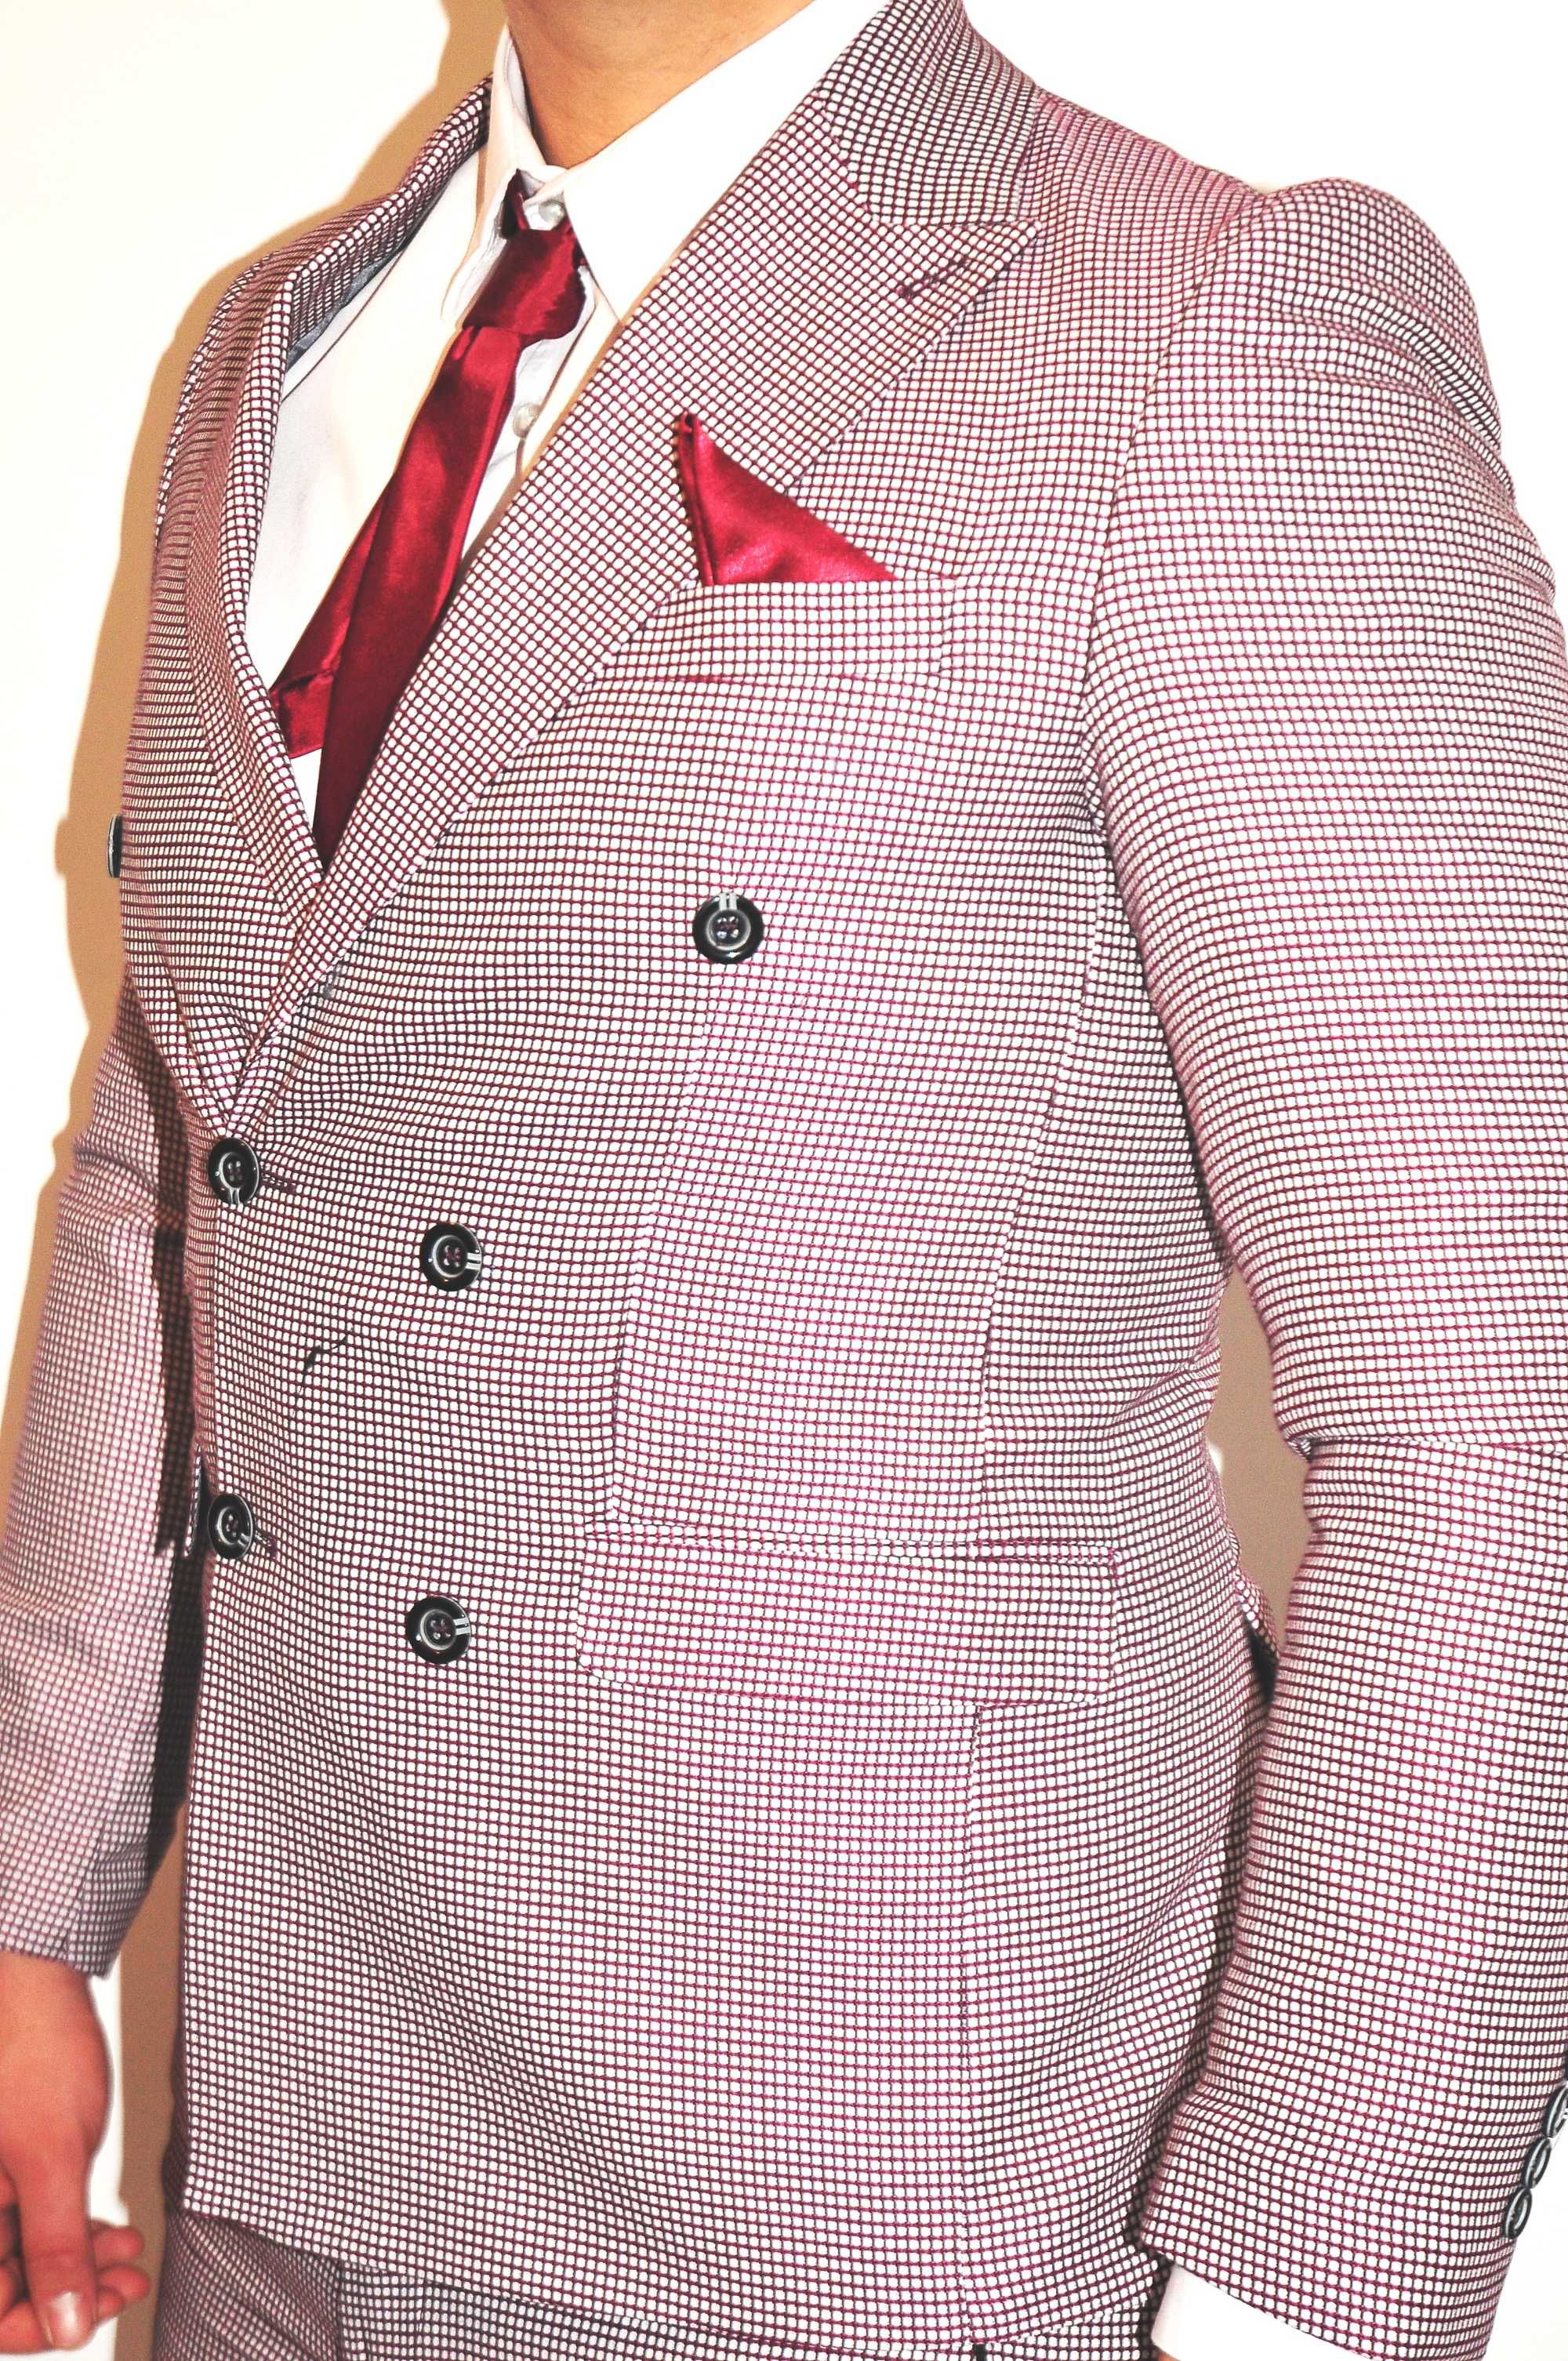 Costum carouri rosu model inchidere dubla ideal pentru evenimente